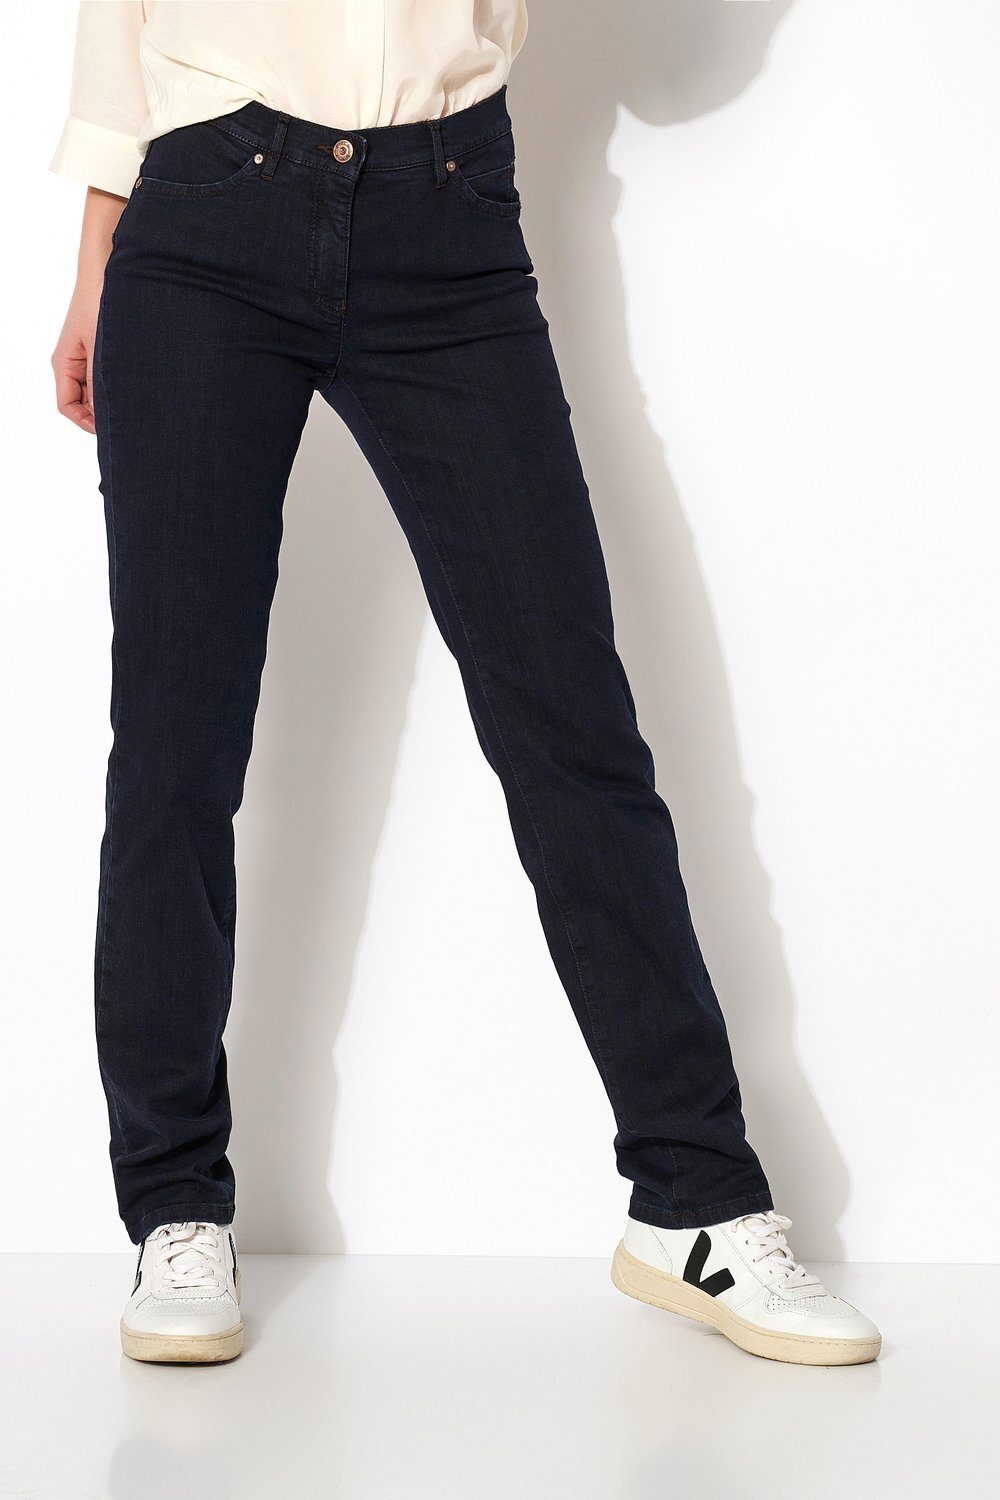 [Neuer Eröffnungsverkauf] TONI 5-Pocket-Jeans Perfect und dunkelblau - mit Bauch Shaping-Effekt an Po 059 Shape